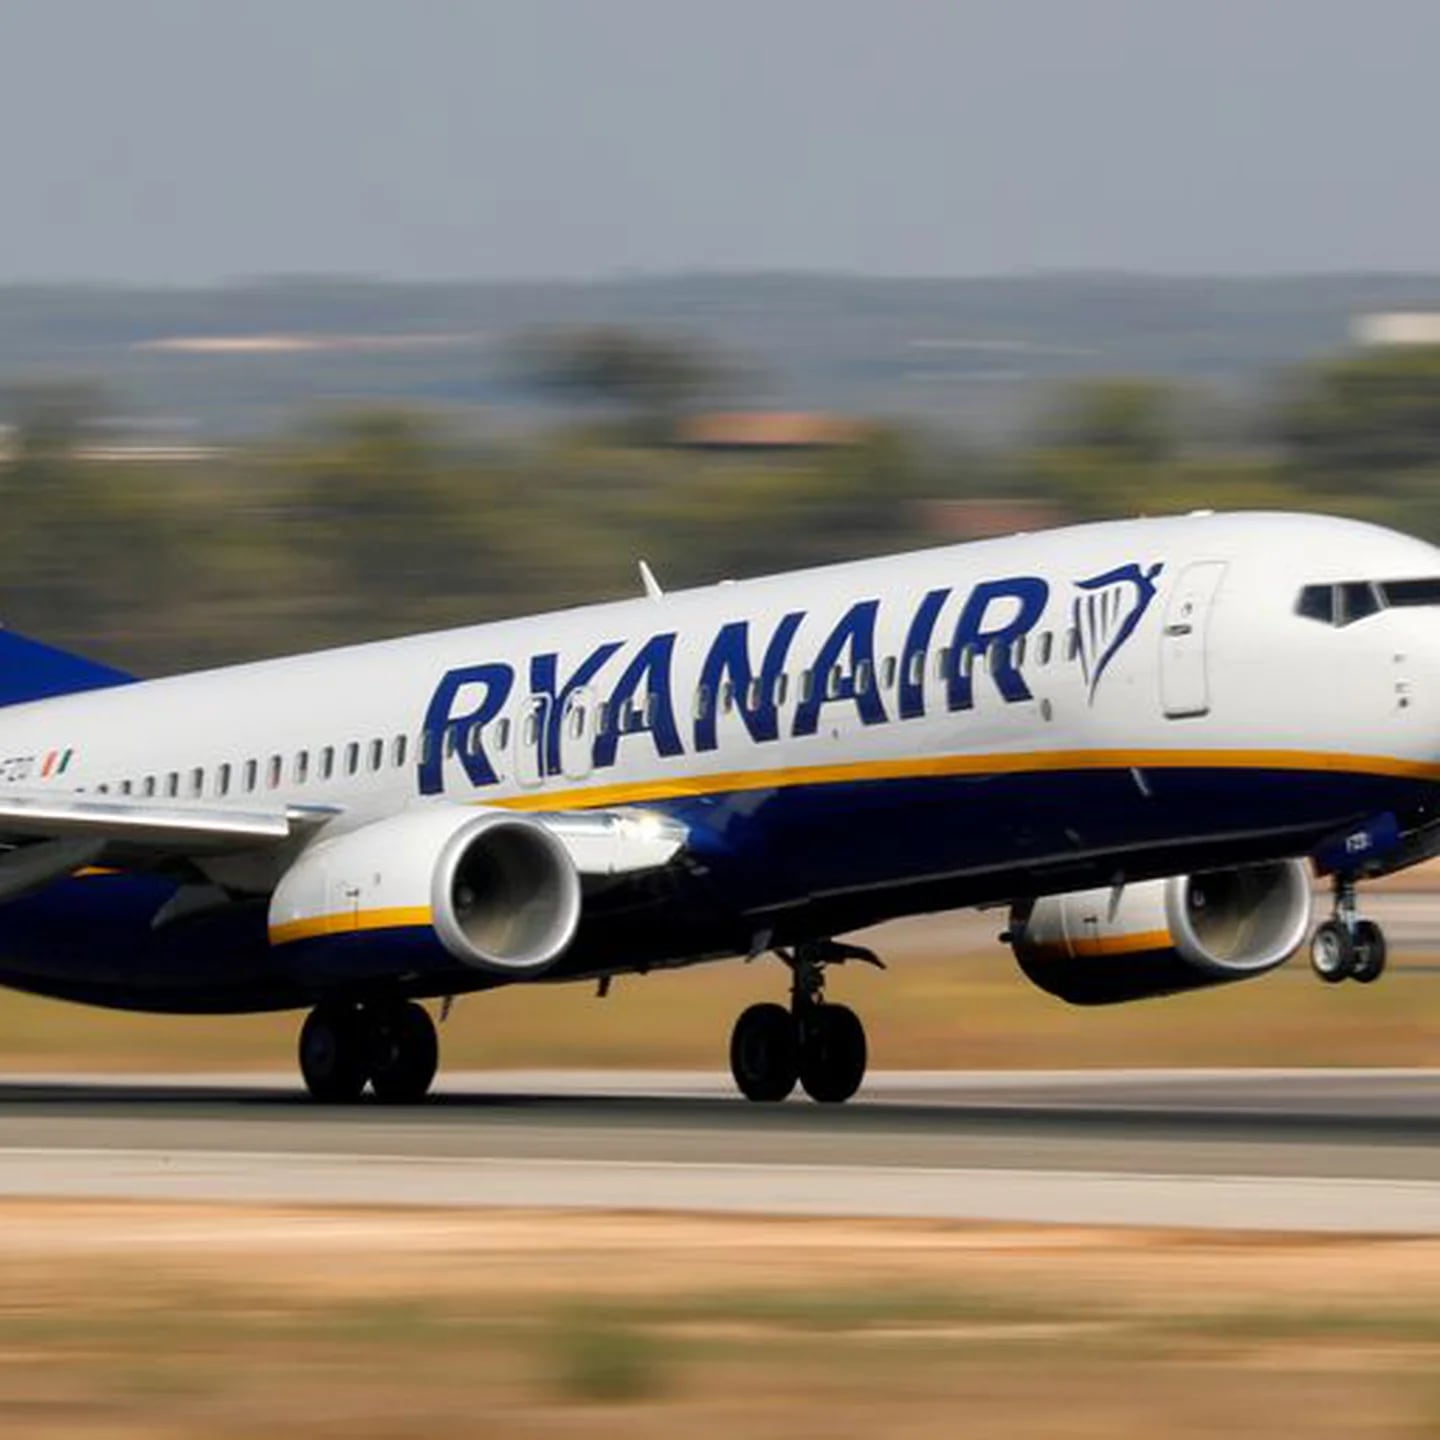 Medidas de mochilas en Ryanair en 2023: esta es la normativa del equipaje  de mano - Infobae